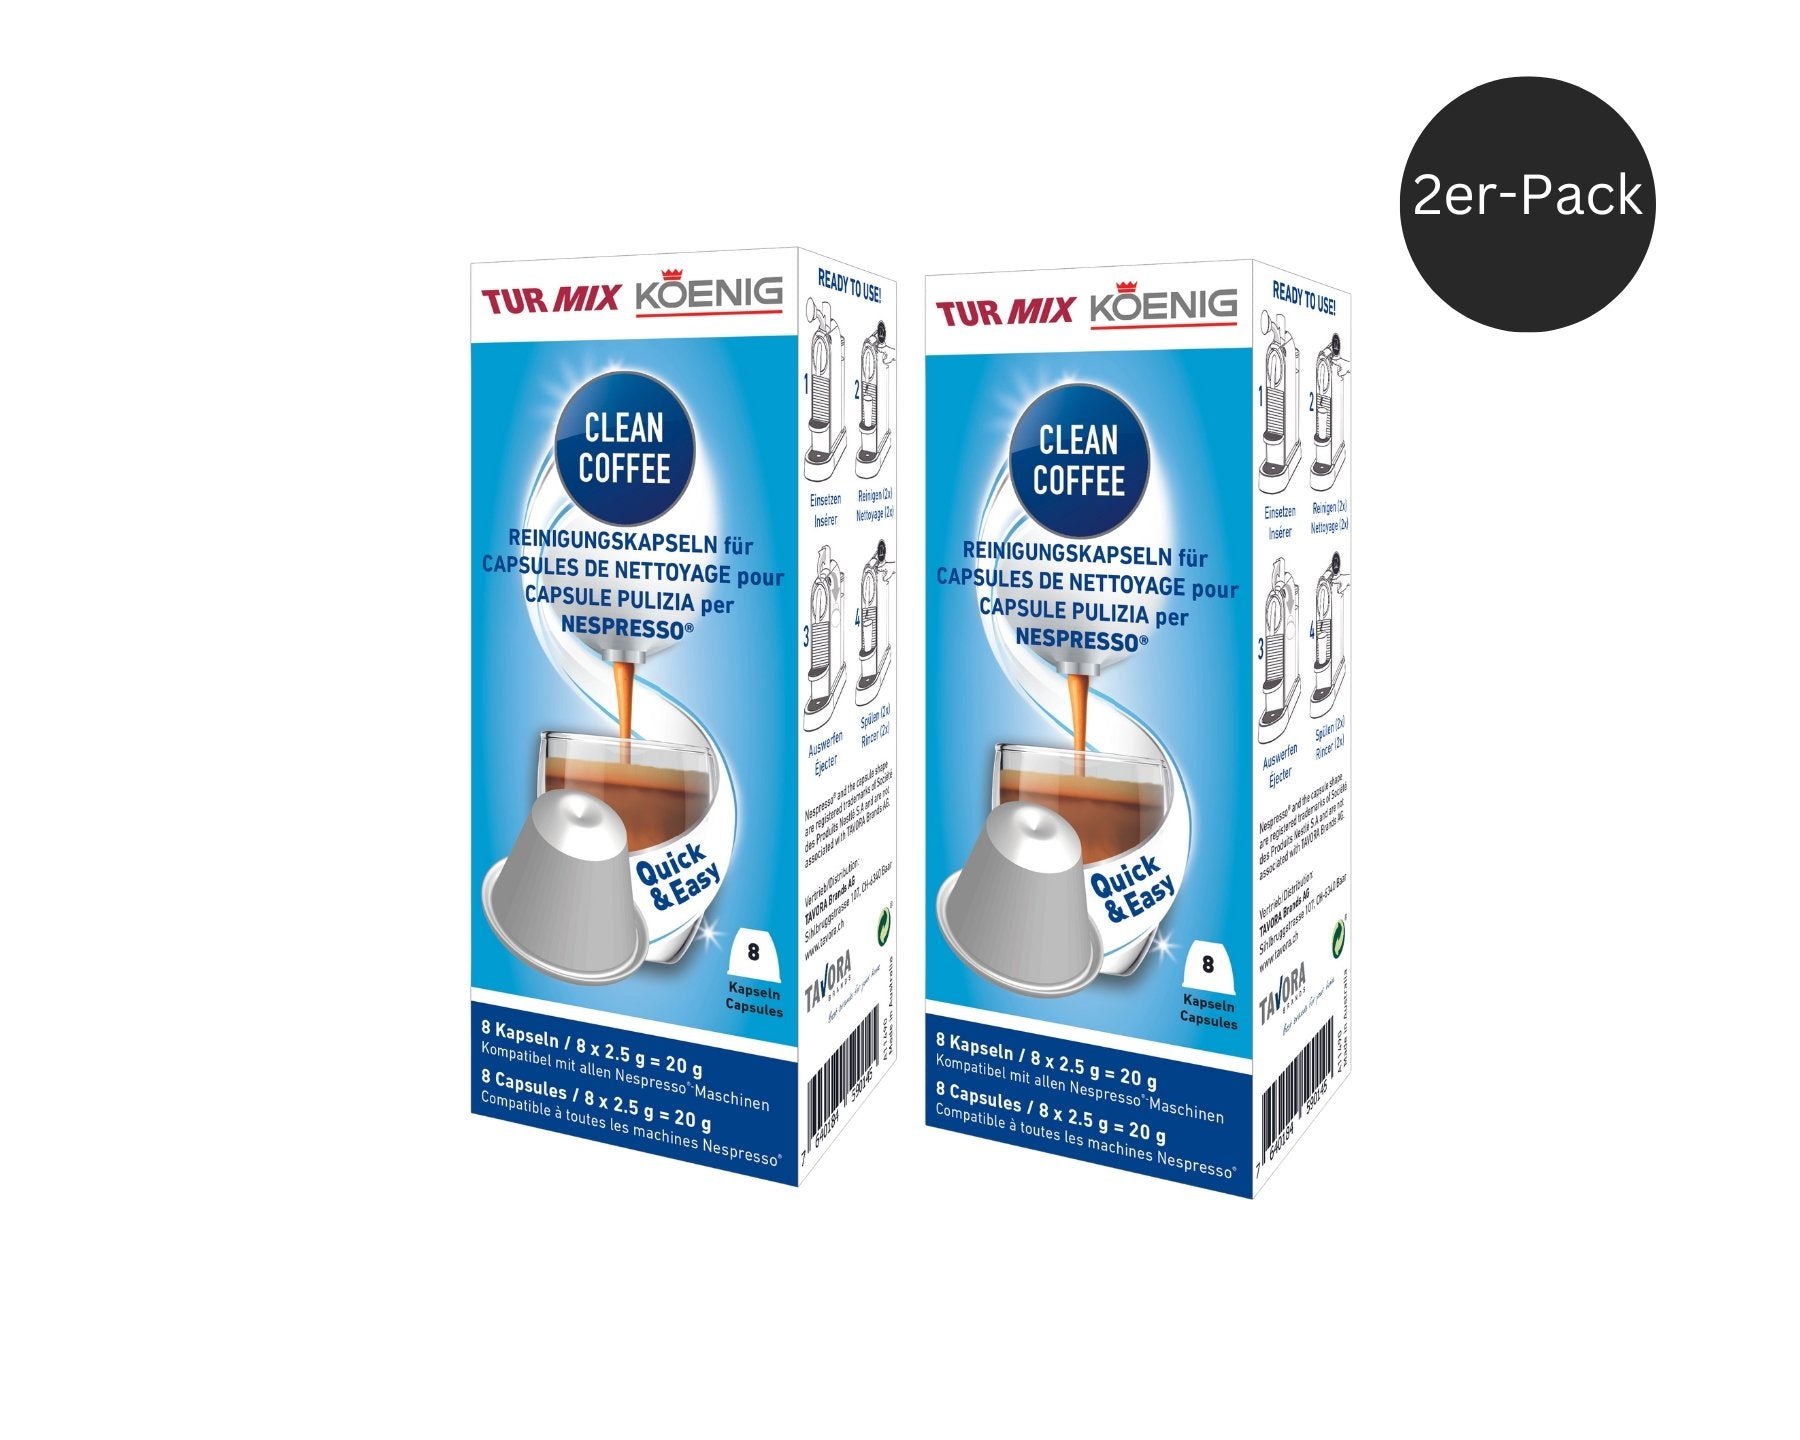 Clean Coffee, Reinigungskapseln für Nespresso Maschinen - kitchen-more.ch, kostenloser Versand in der ganzen Schweiz